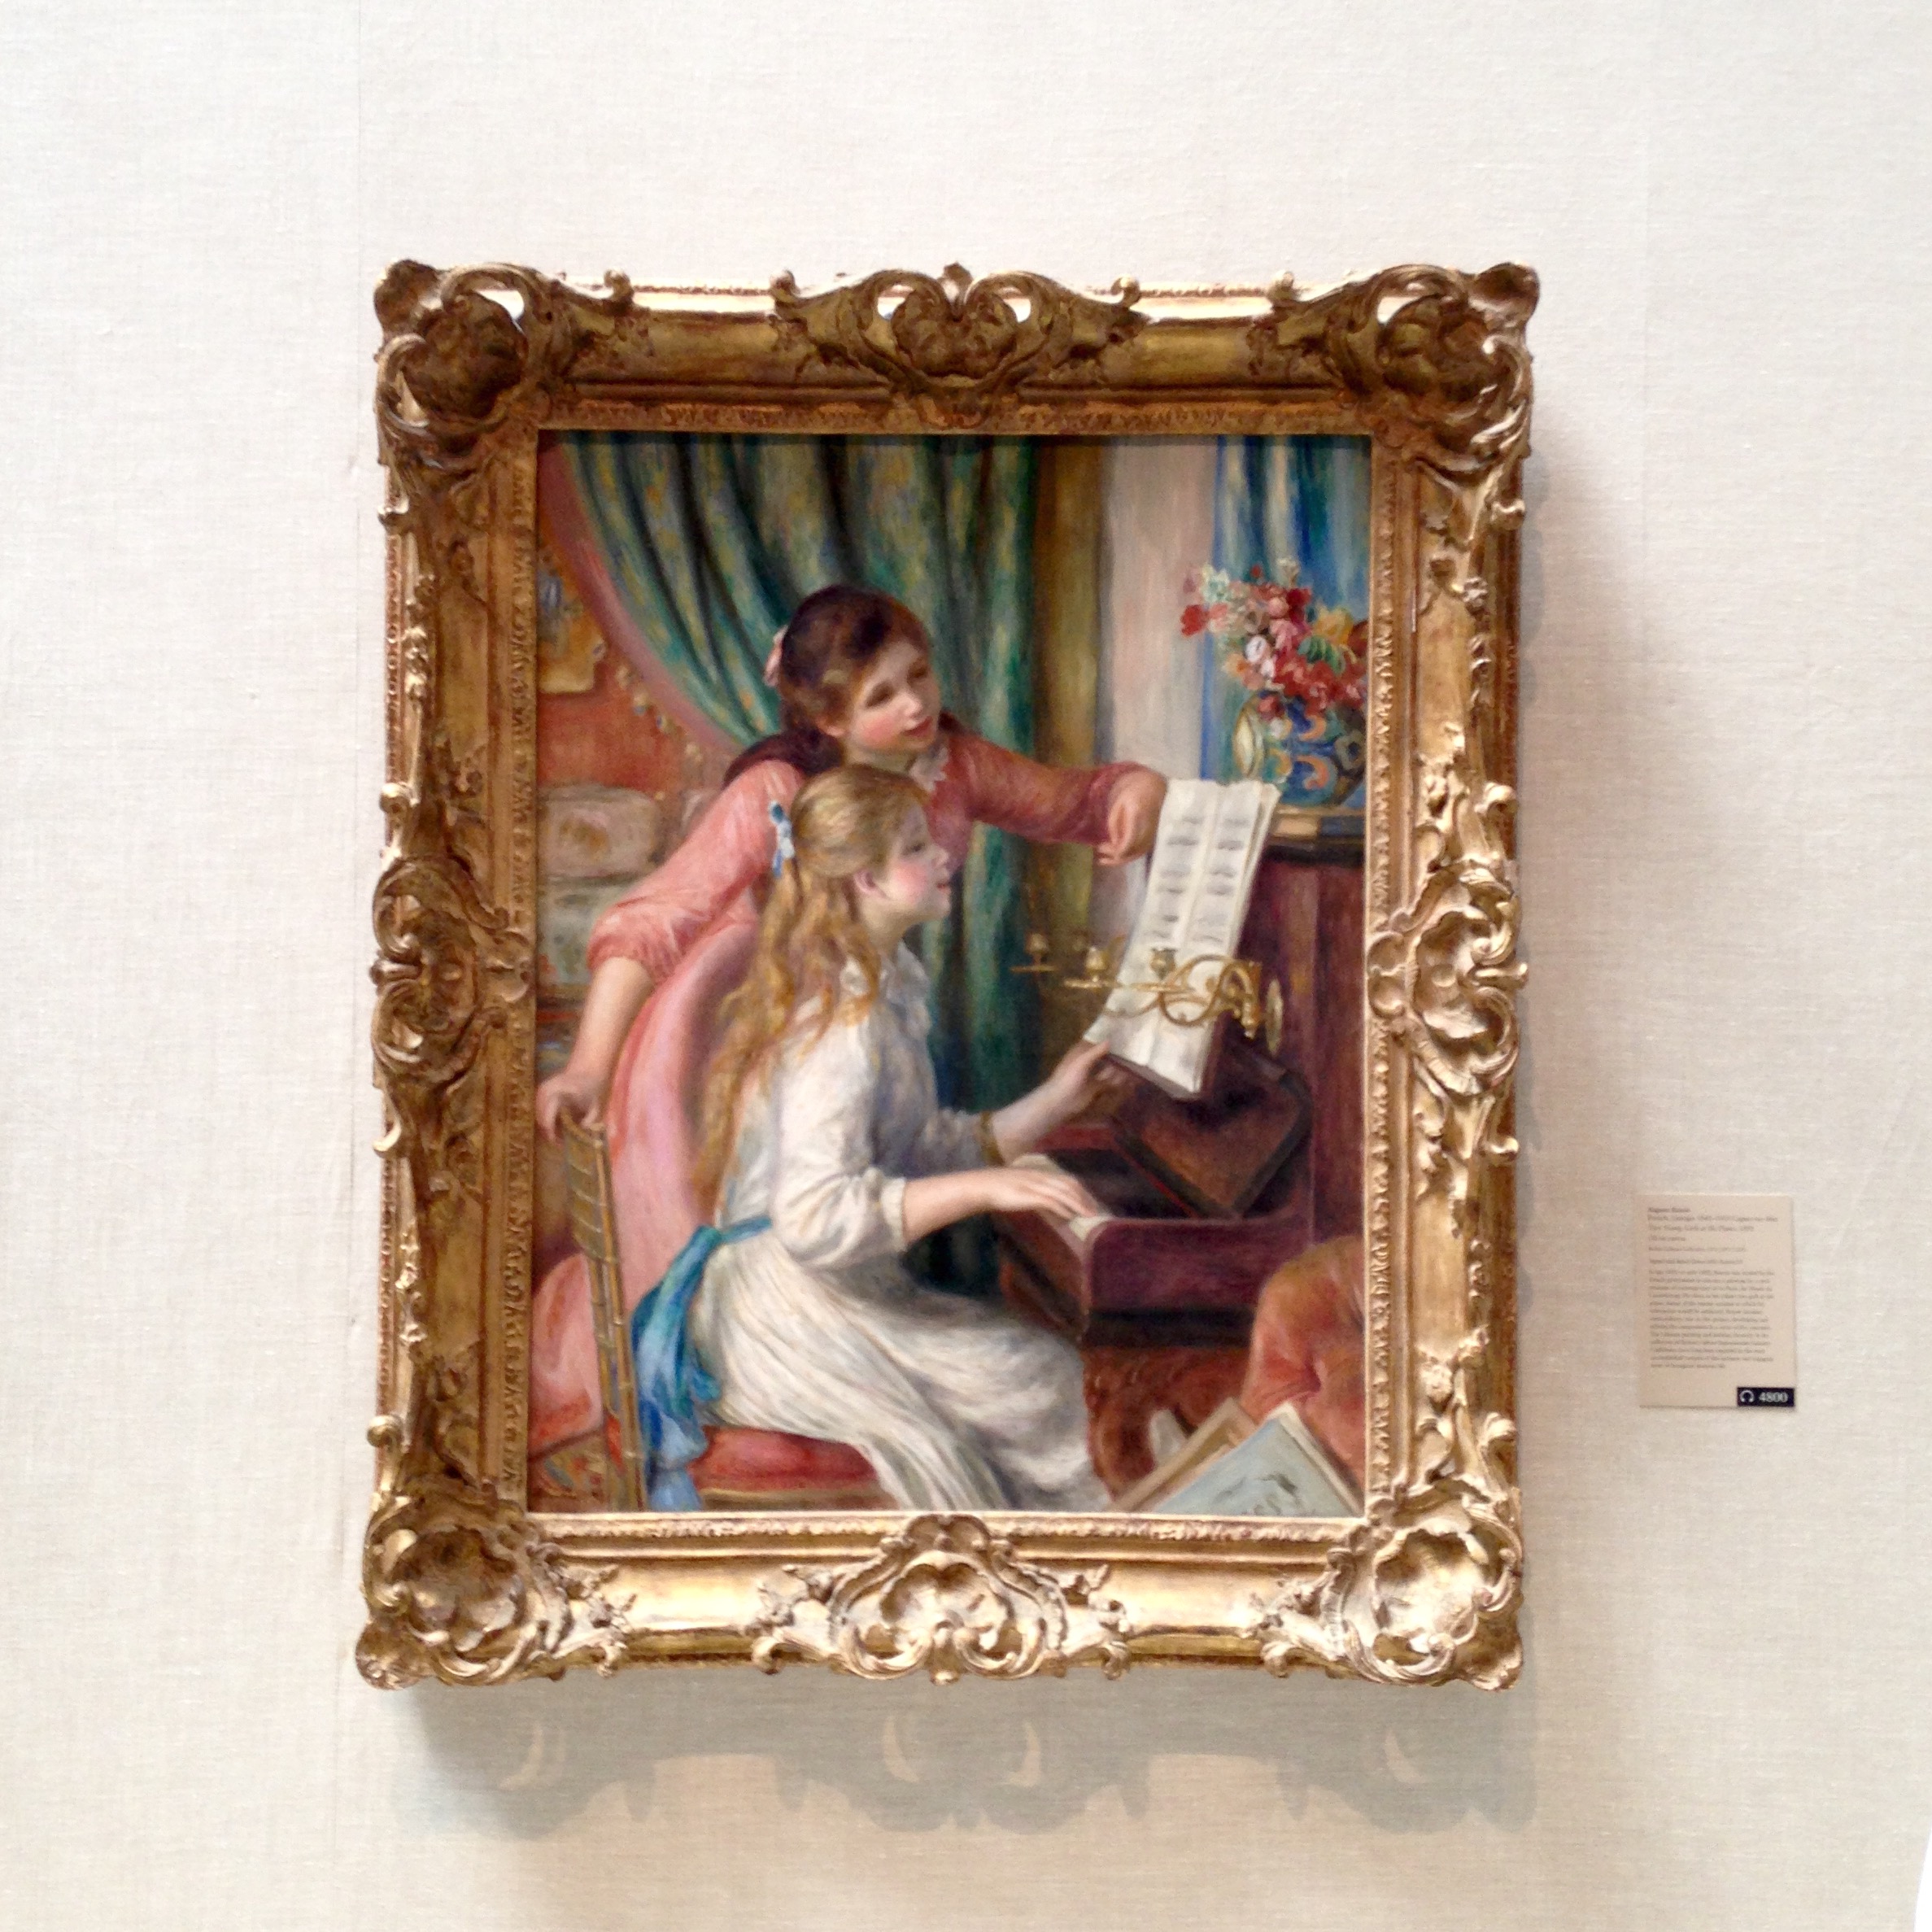 My favorite: Renoir at The Met